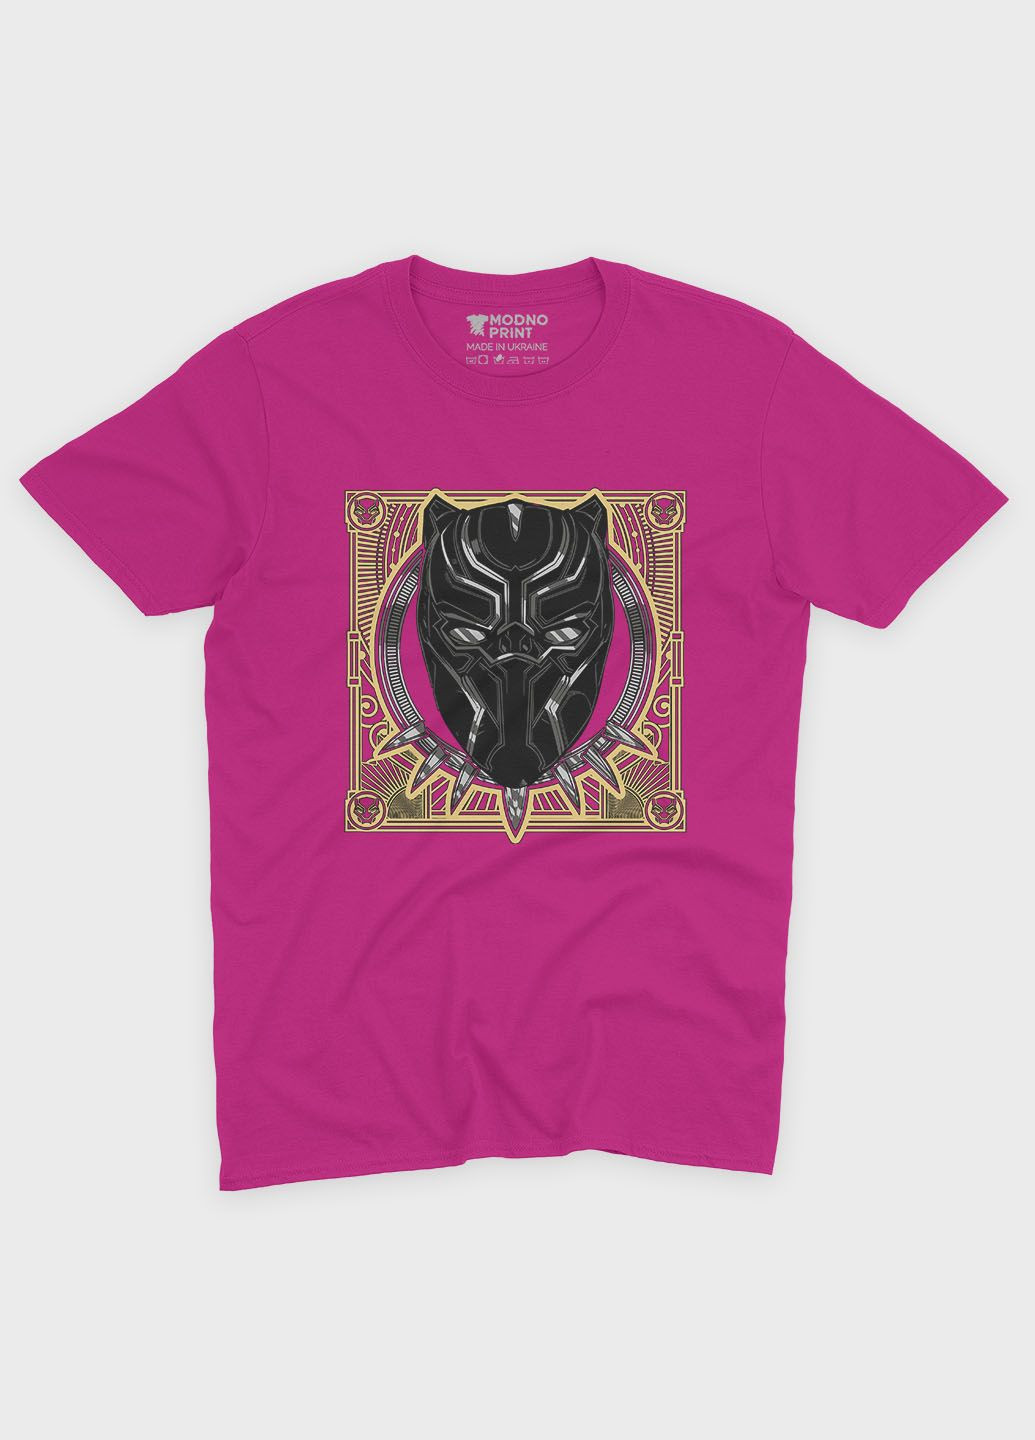 Розовая демисезонная футболка для мальчика с принтом супергероя - черная пантера (ts001-1-fuxj-006-027-003-b) Modno